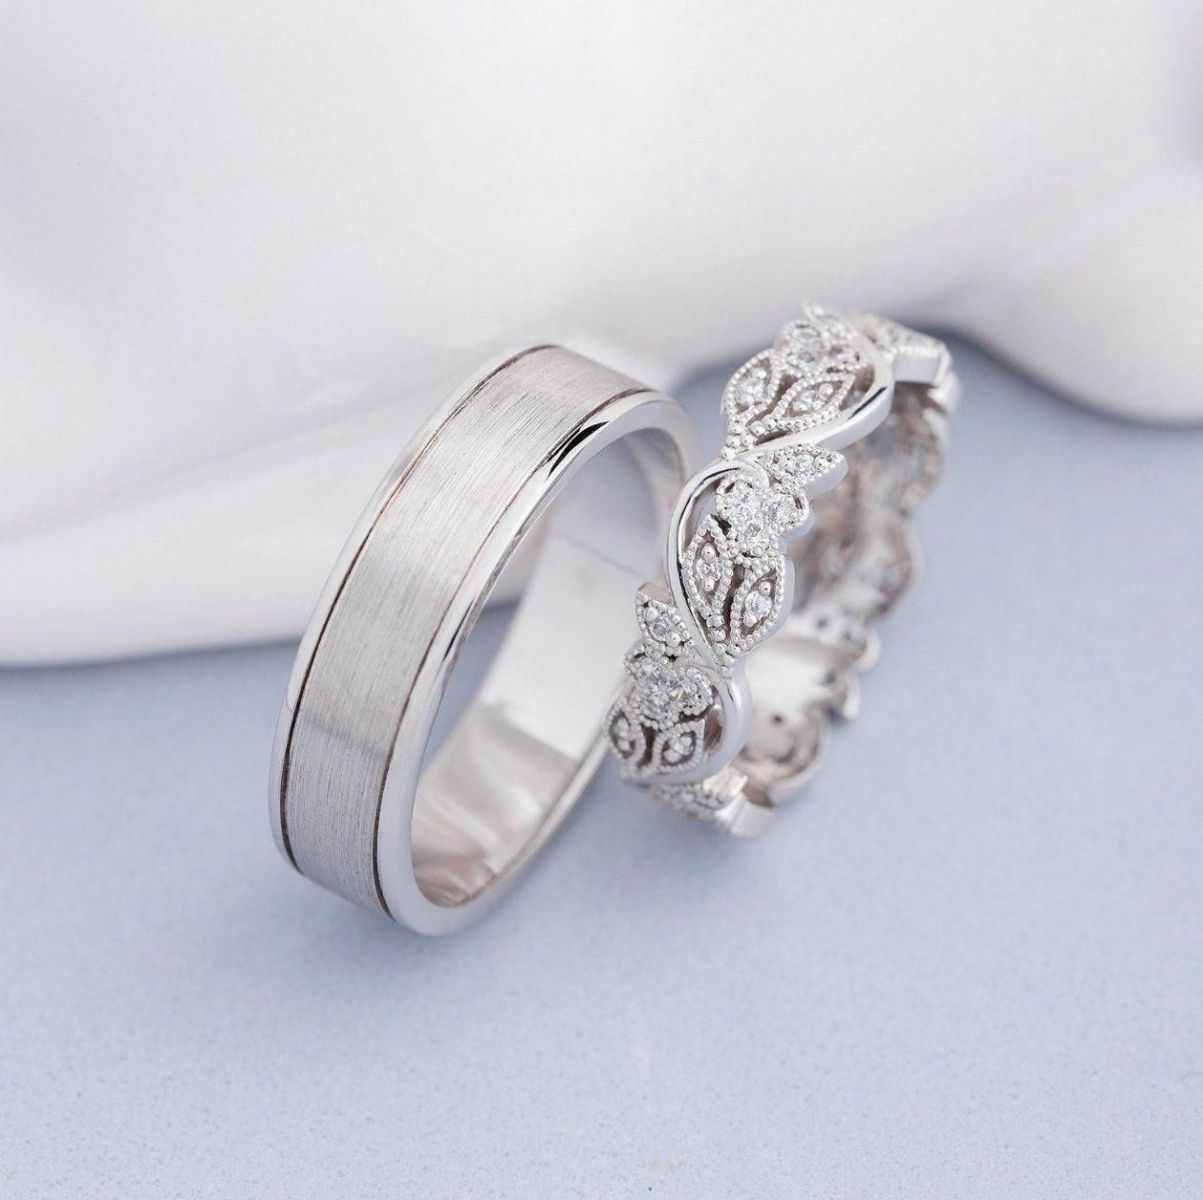 Màu sắc của nhẫn bạch kim là sắc trắng bạc